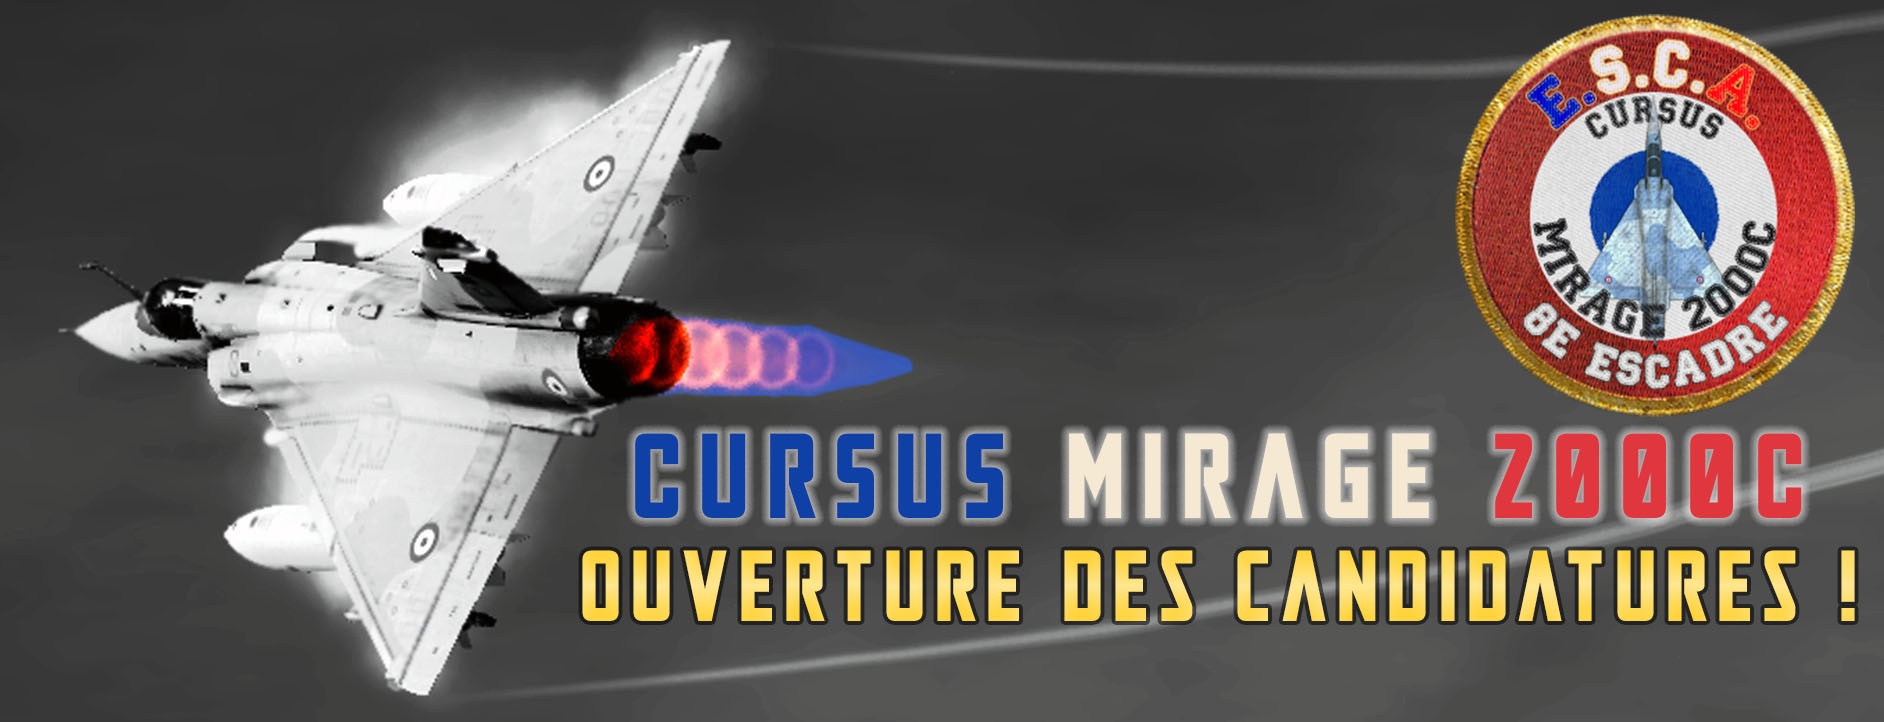 OUVERTURE des Candidatures au Cursus Mirage 2000C Candid16